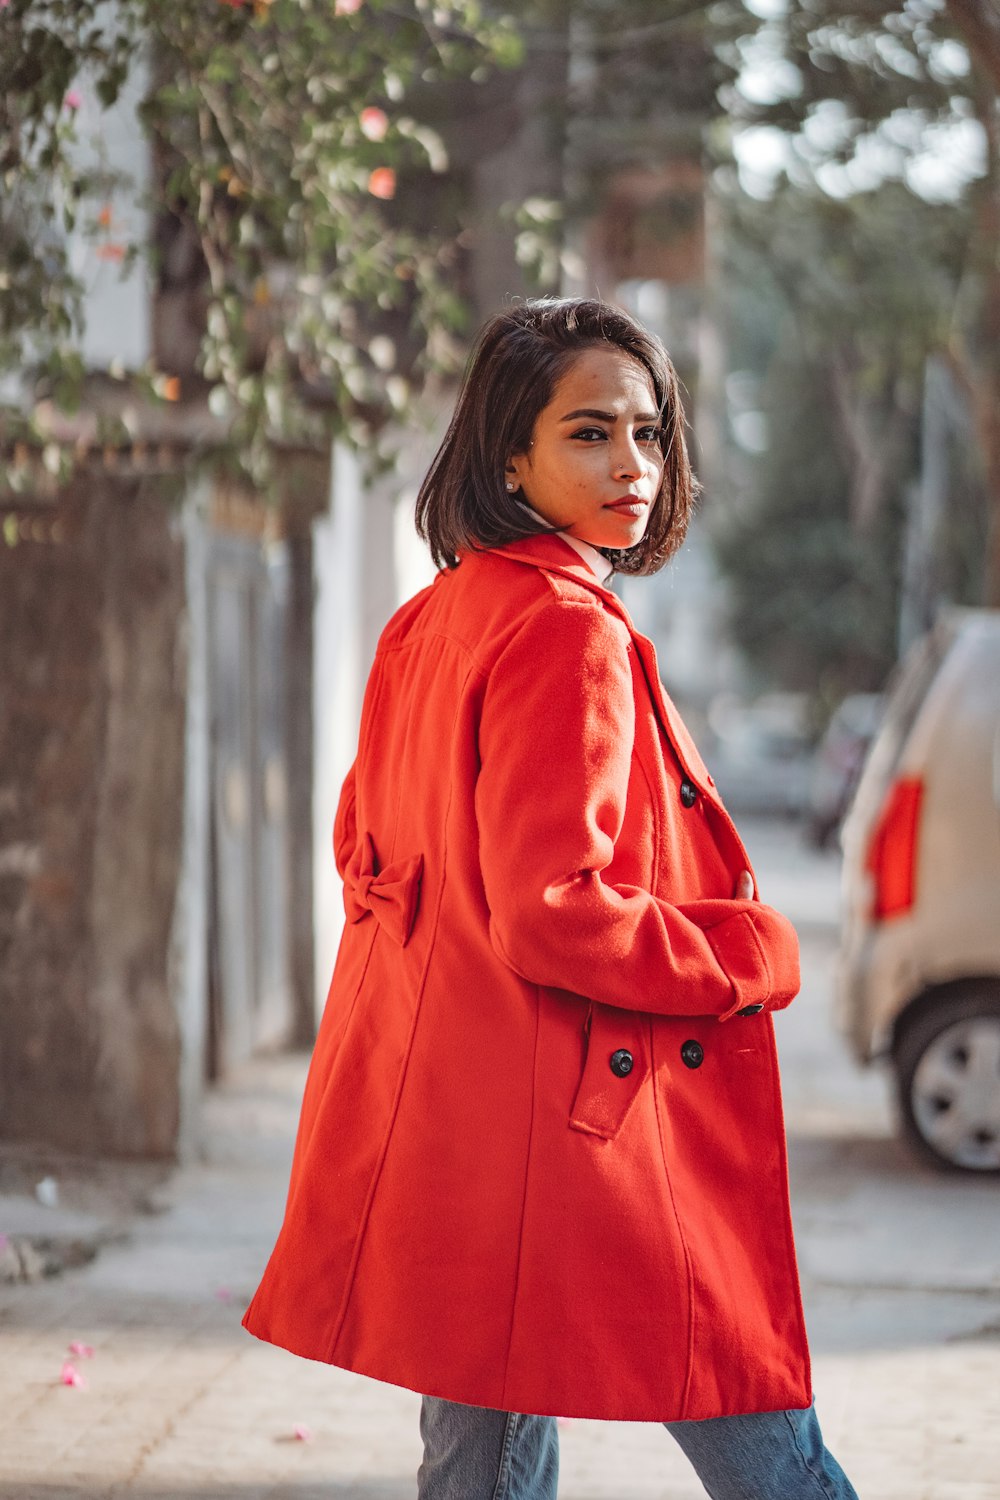 Une femme en manteau rouge marche dans la rue photo – Photo Calcutta  Gratuite sur Unsplash